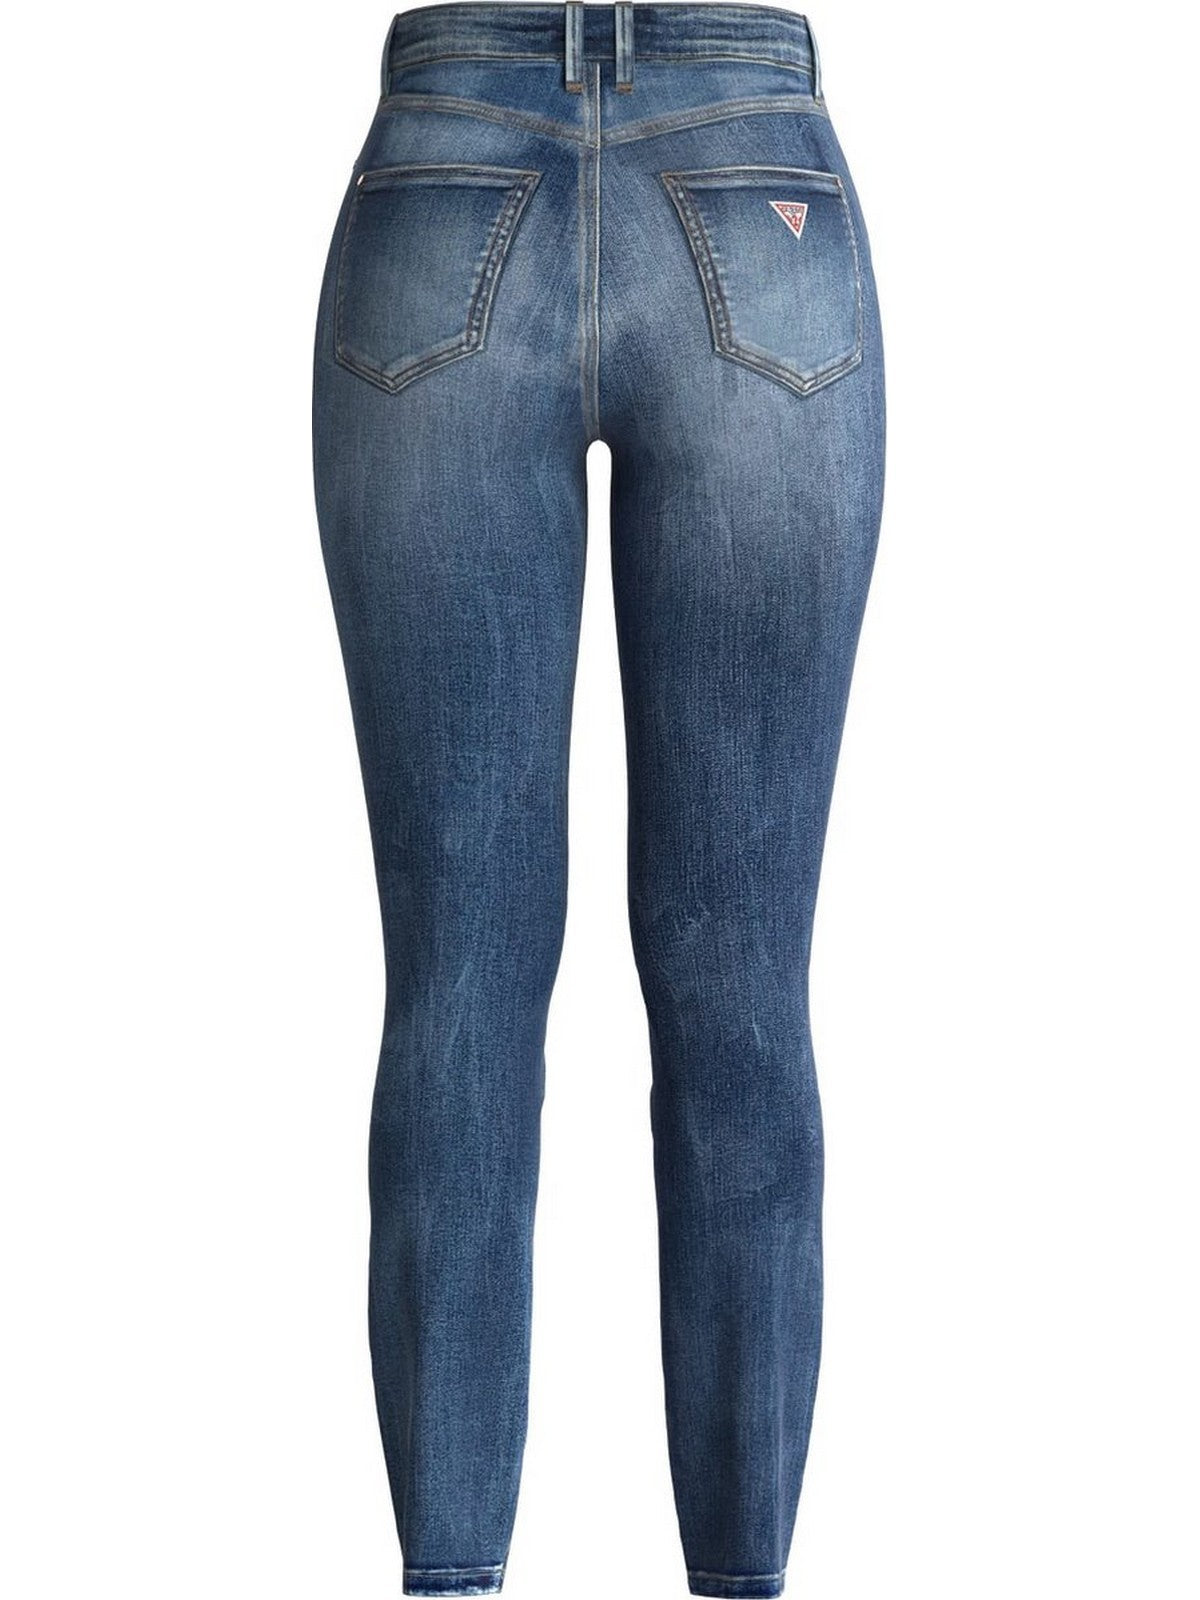 GUESS Jeans Donna 1981 Skinny W2YA46 D4Q02 CMD1 Blu